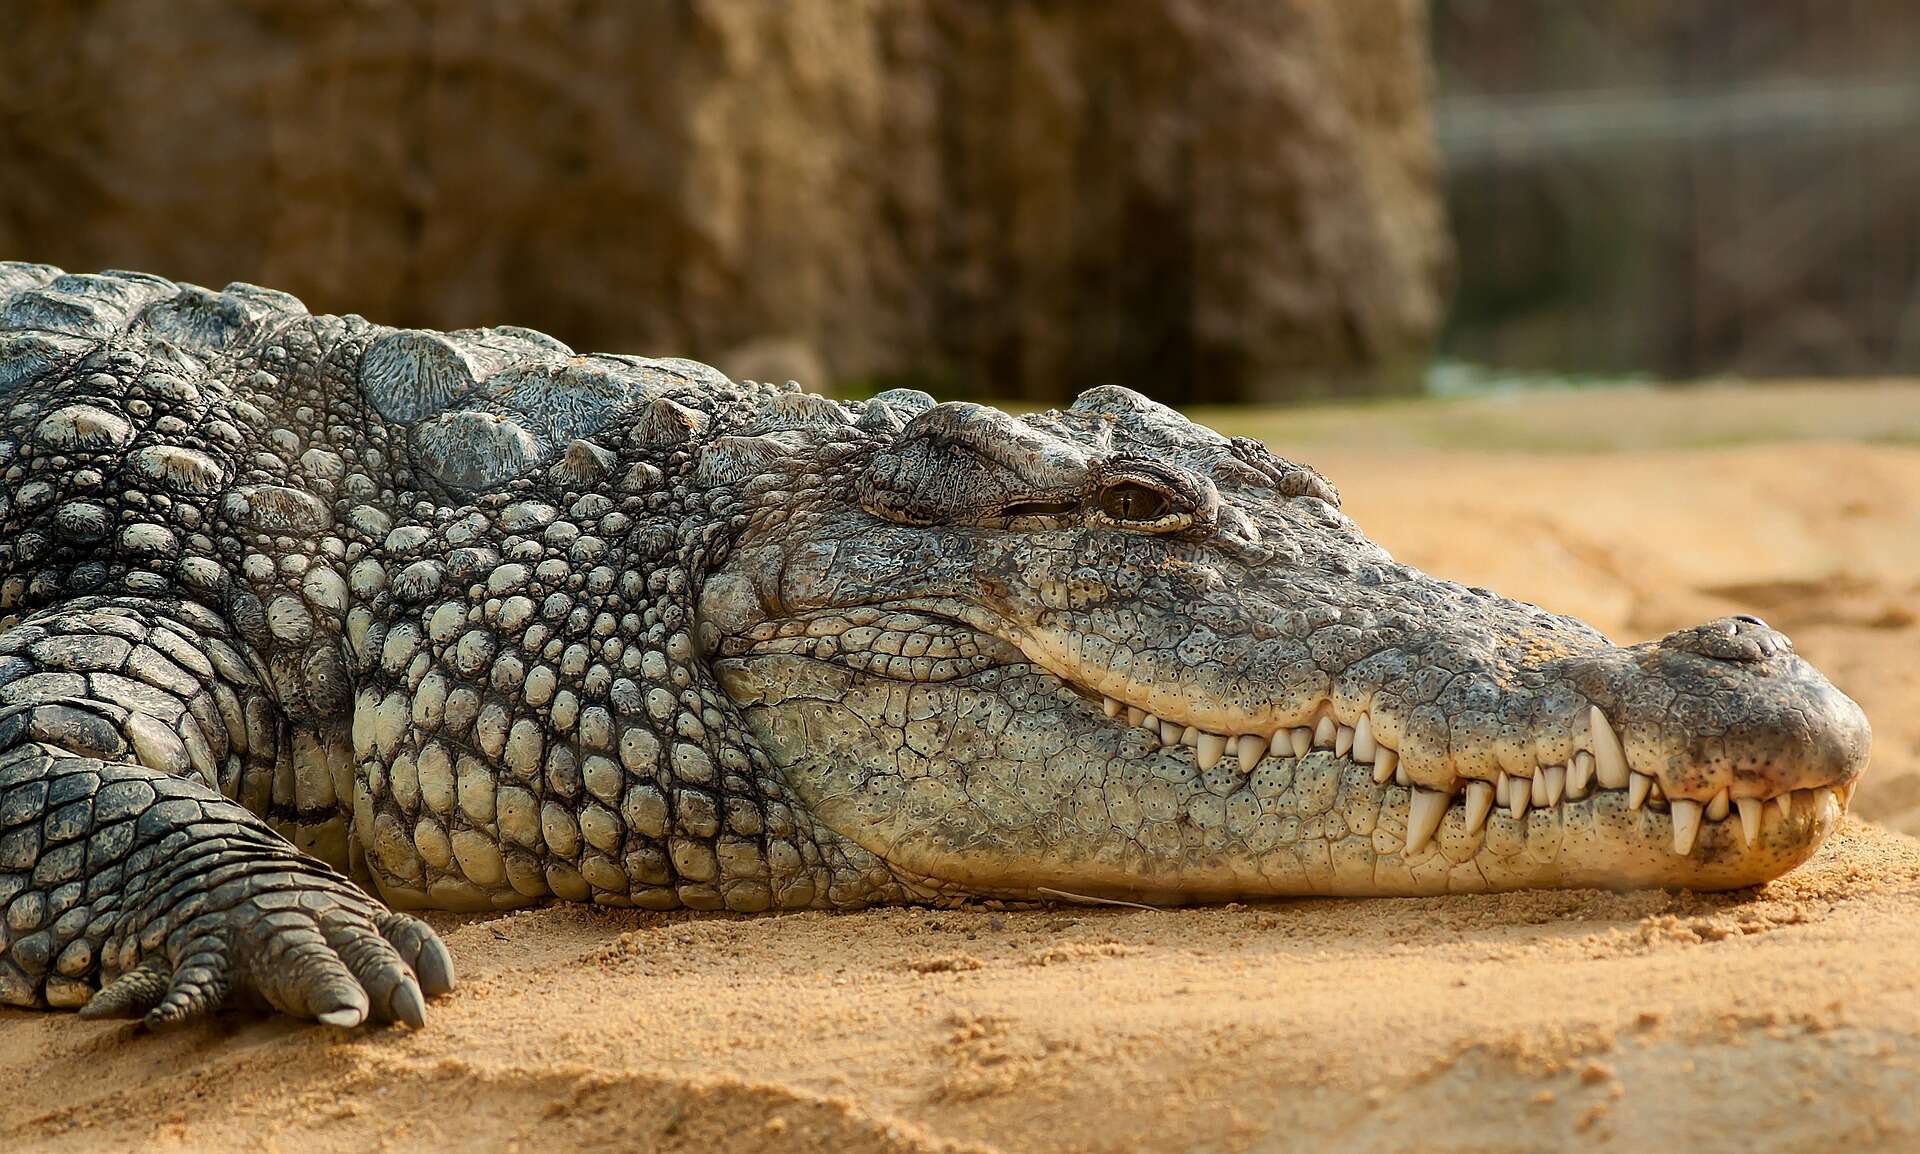 Découverte en Espagne des traces des derniers crocodiles d'Europe